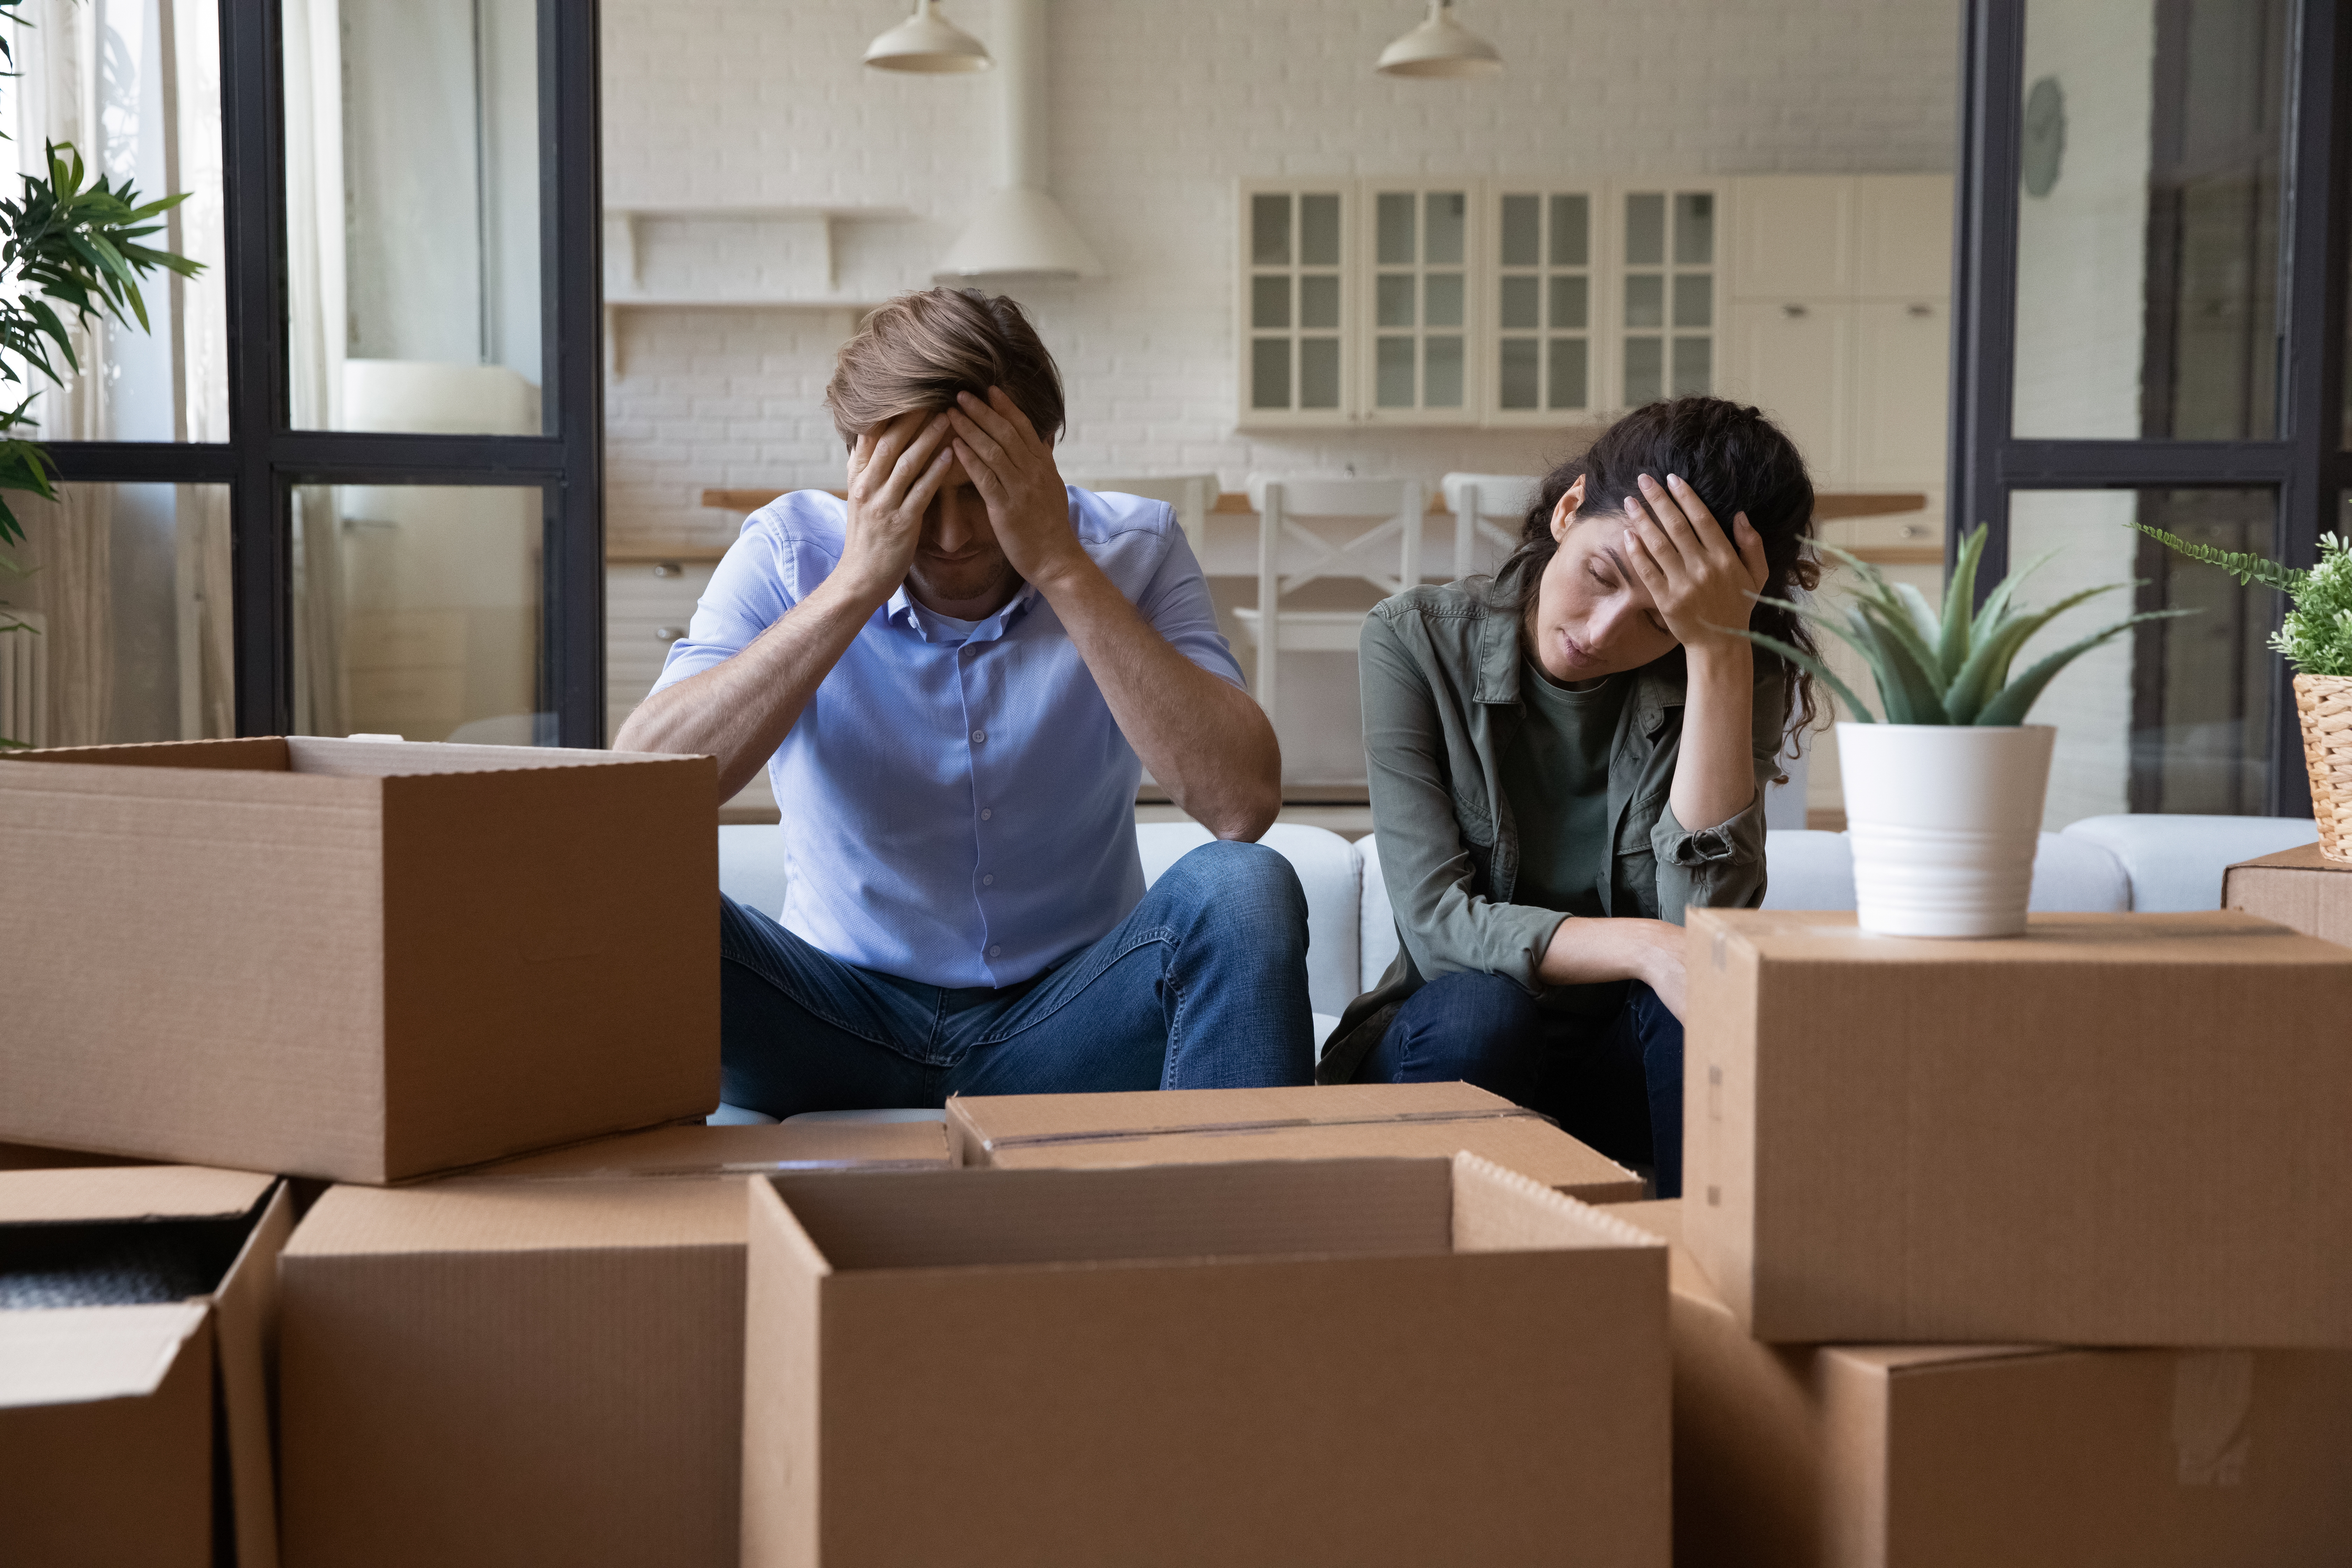 Ein gestresstes Paar umgeben von Kisten | Quelle: Shutterstock